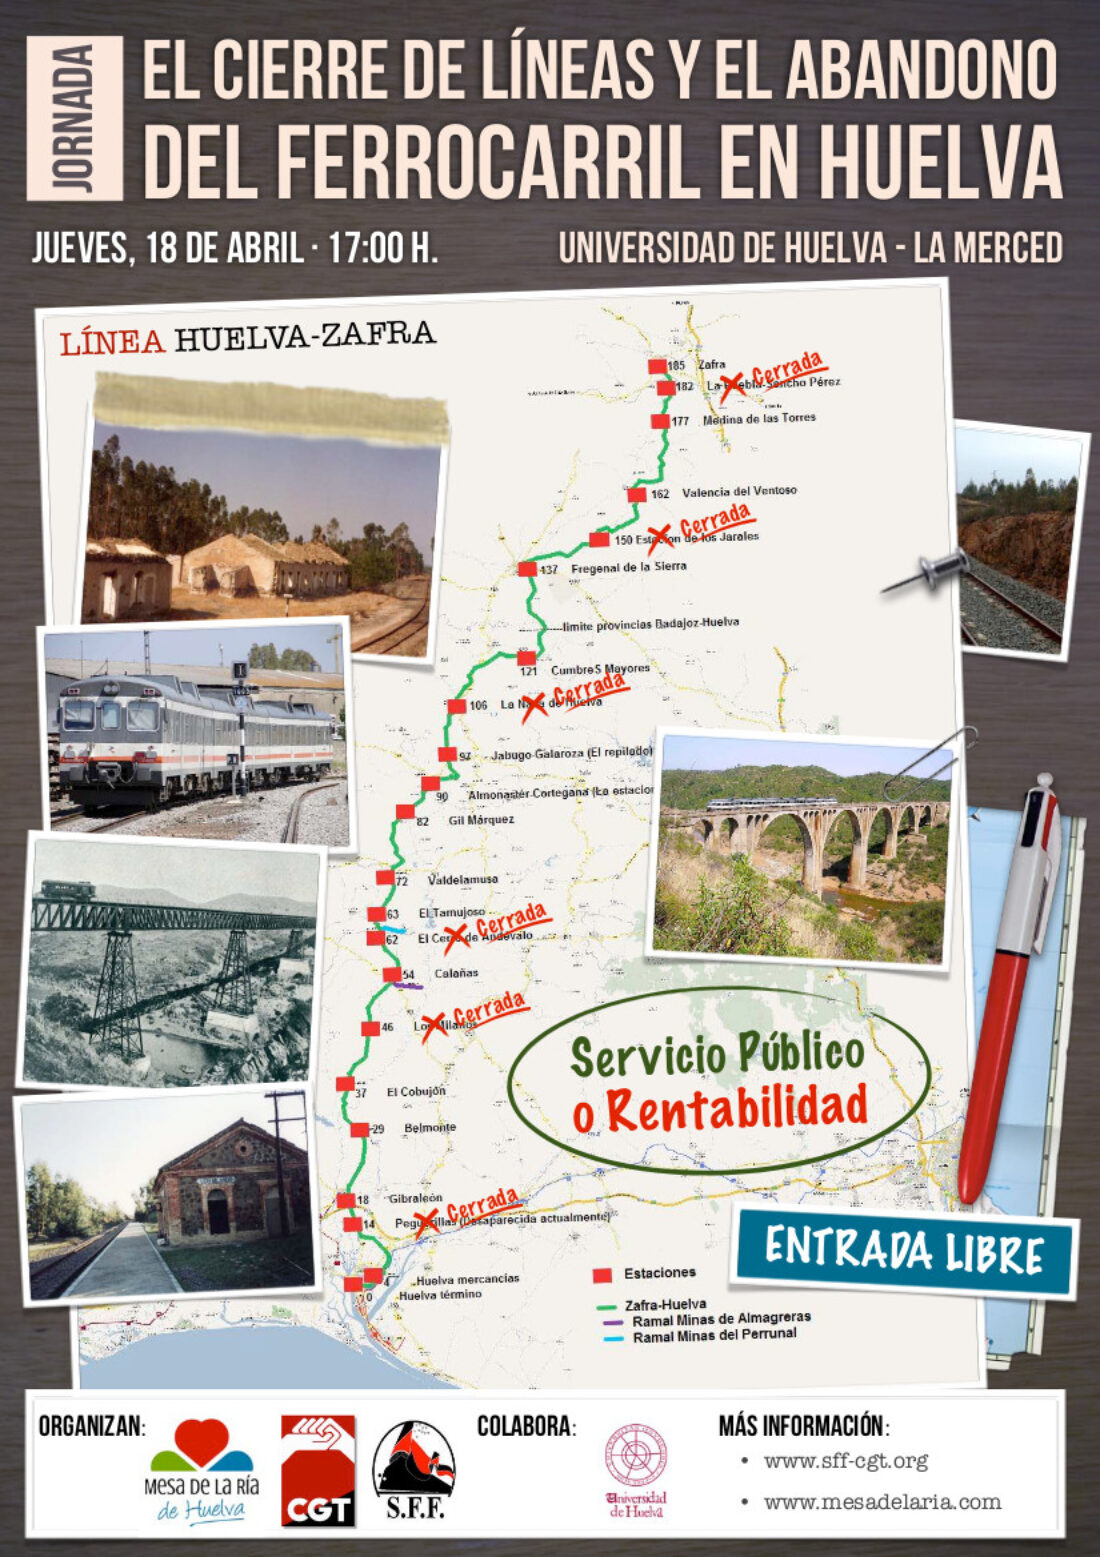 El cierre de líneas y el abandono del ferrocarril en Huelva